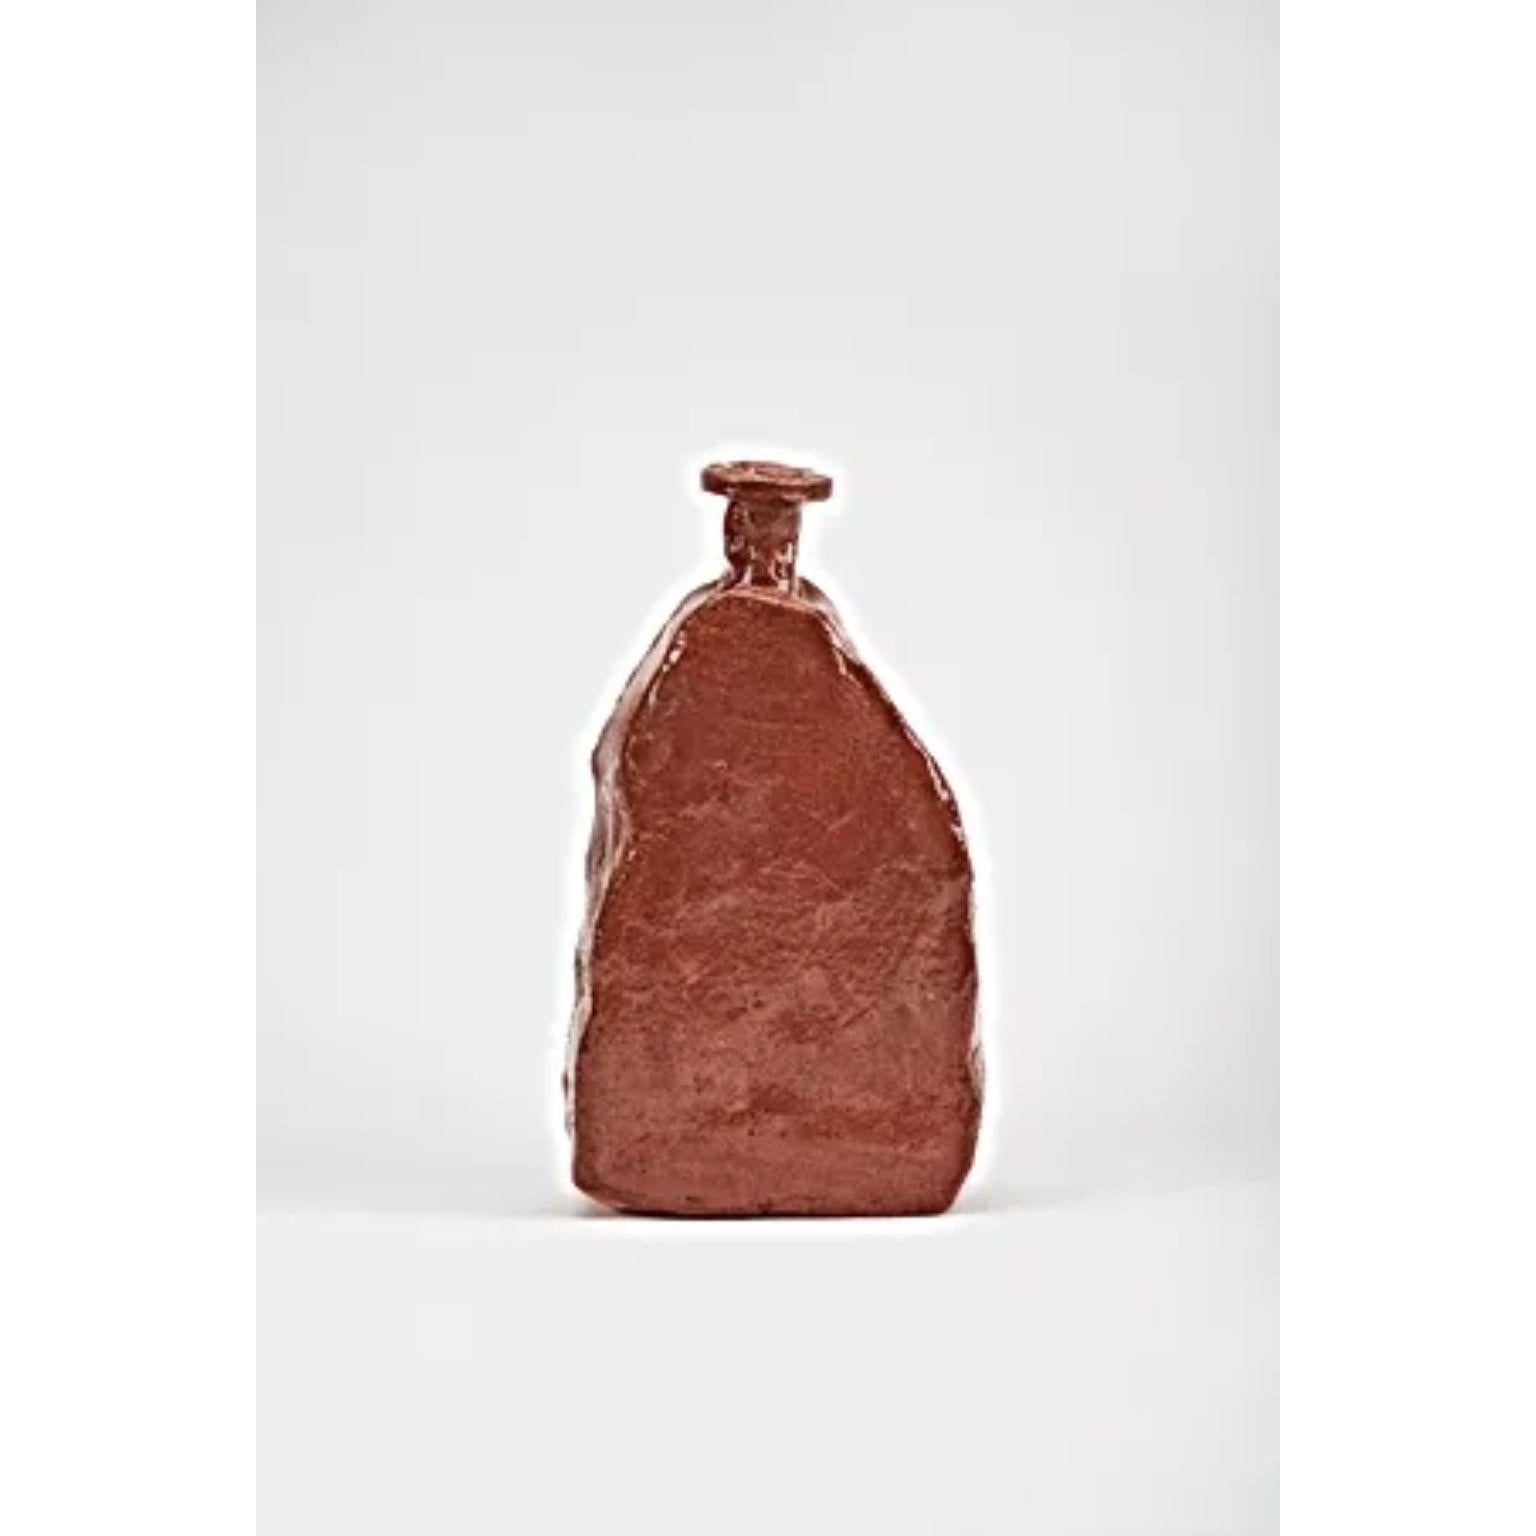 Aloi Medium-Vase von Willem Van Hooff
Abmessungen: B 35 x T 10 x H 32 cm (Die Maße können variieren, da die Stücke handgefertigt sind und leichte Größenabweichungen aufweisen können)
MATERIALIEN: Steingut, Keramik, Pigmente und Glasur.

Willem van